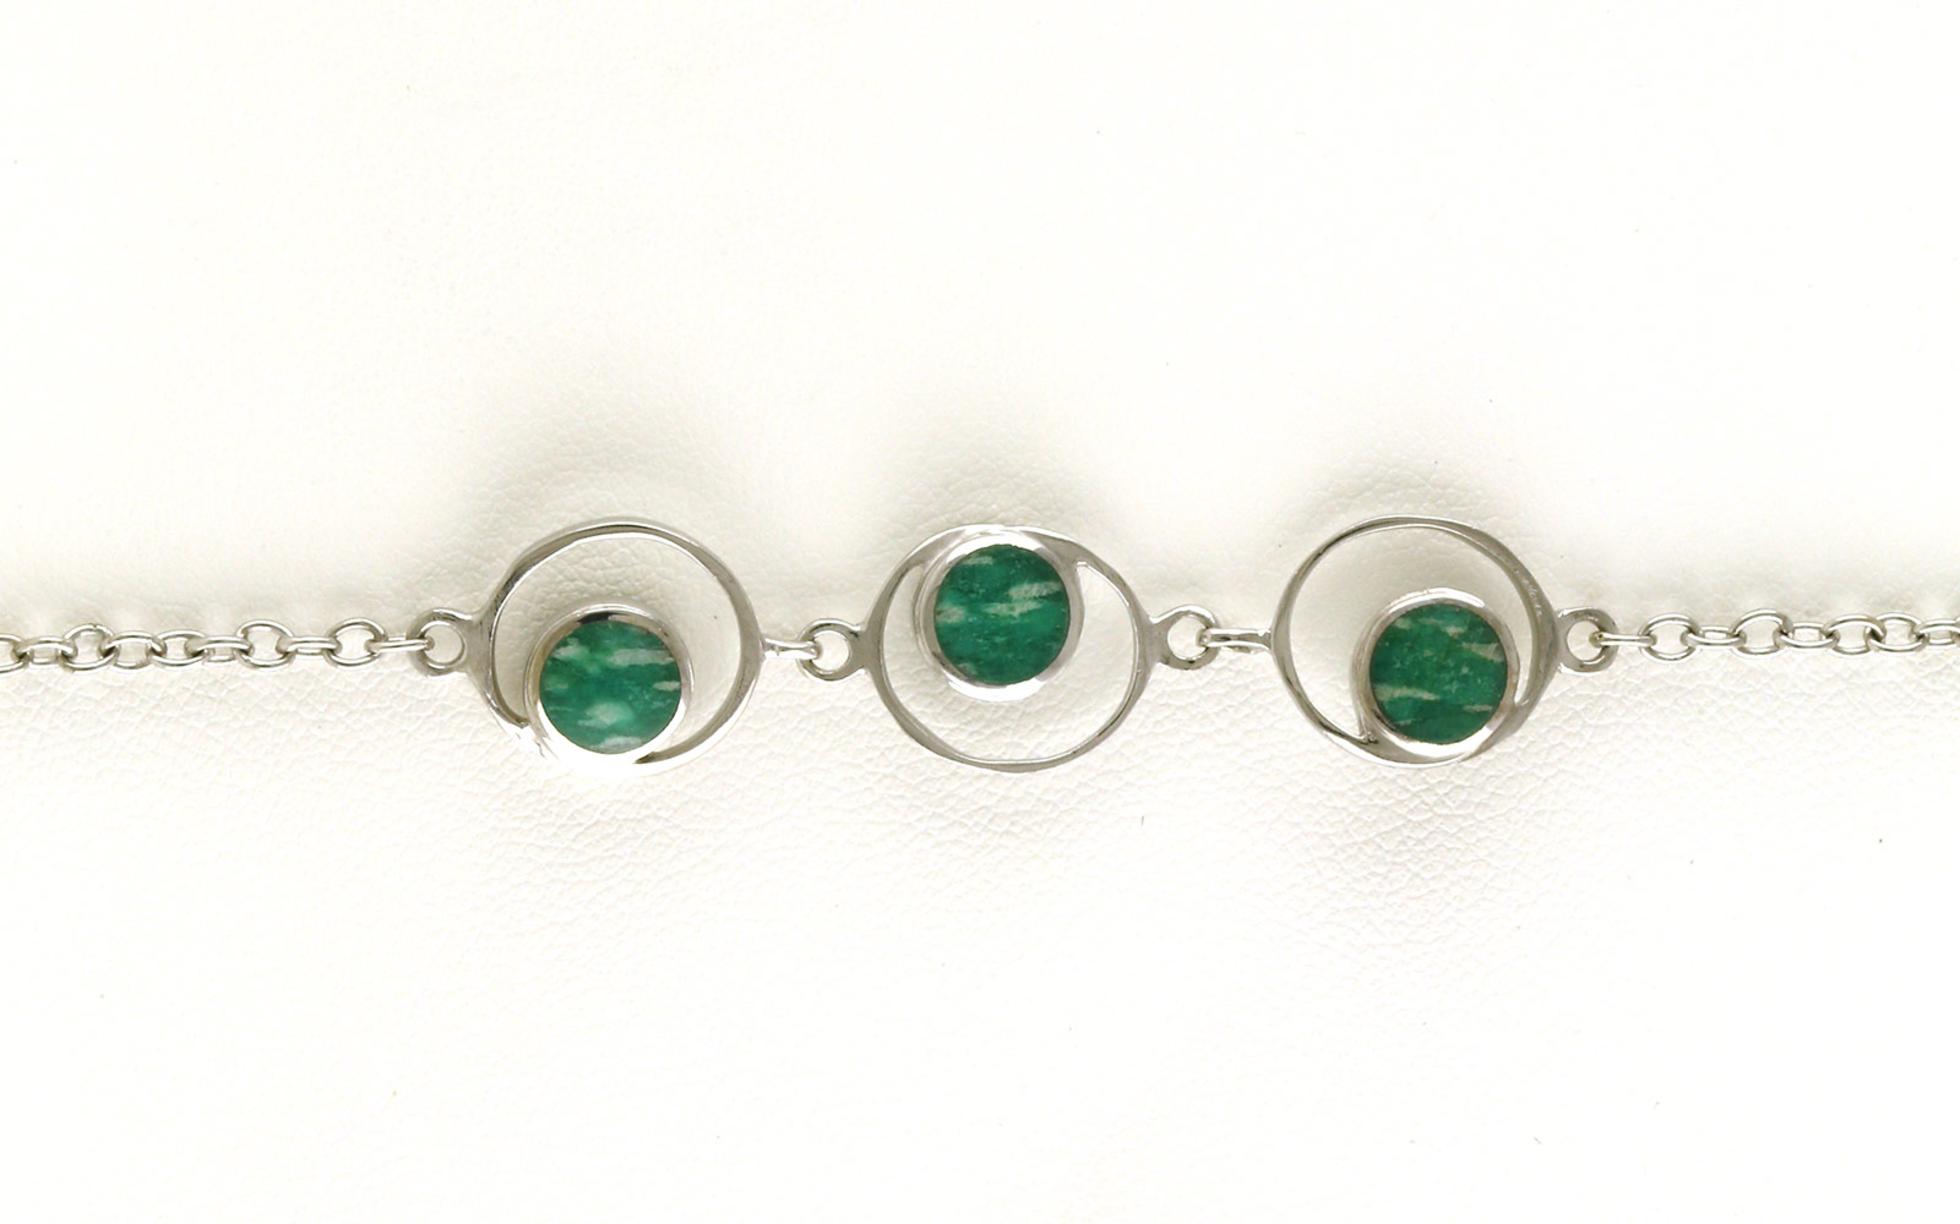 3-Stone Circles Amazonite Bracelet in Sterling Silver